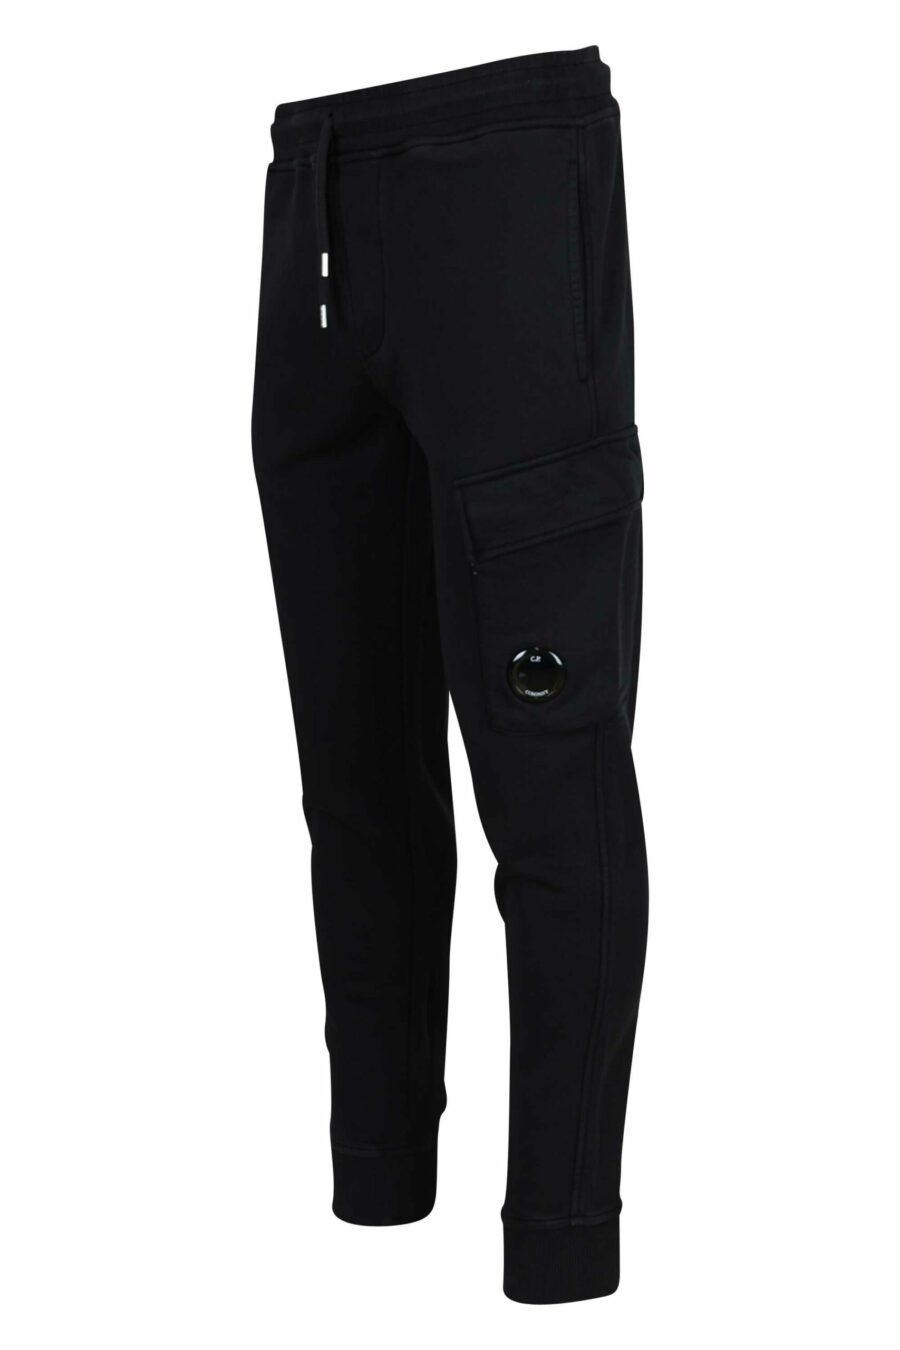 Pantalón de chándal negro estilo cargo con minilogo lente - 7620943739947 1 scaled